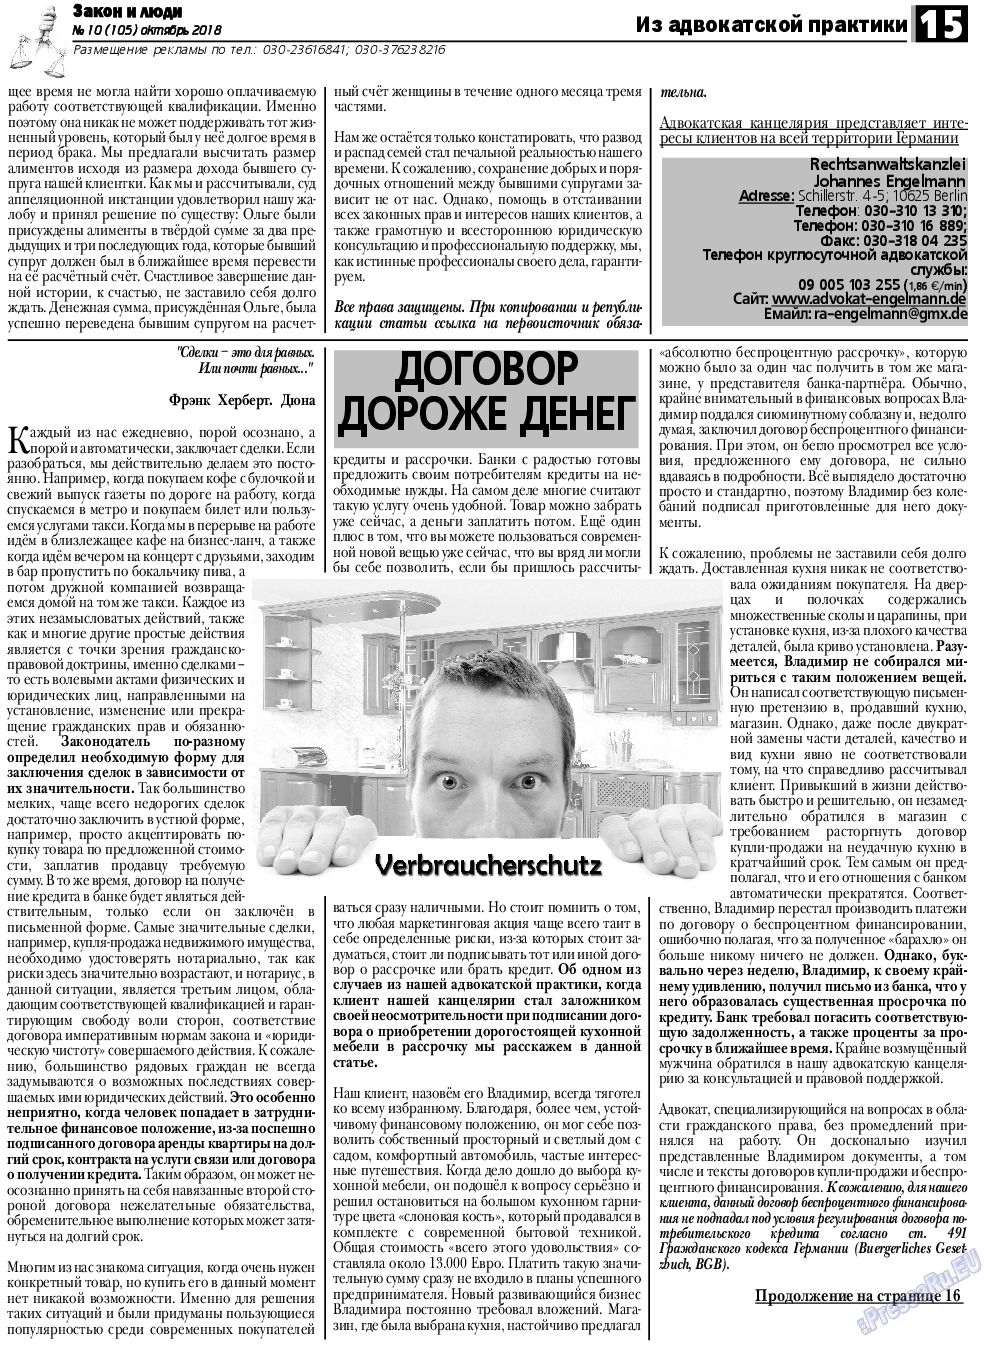 Закон и люди, газета. 2018 №10 стр.15